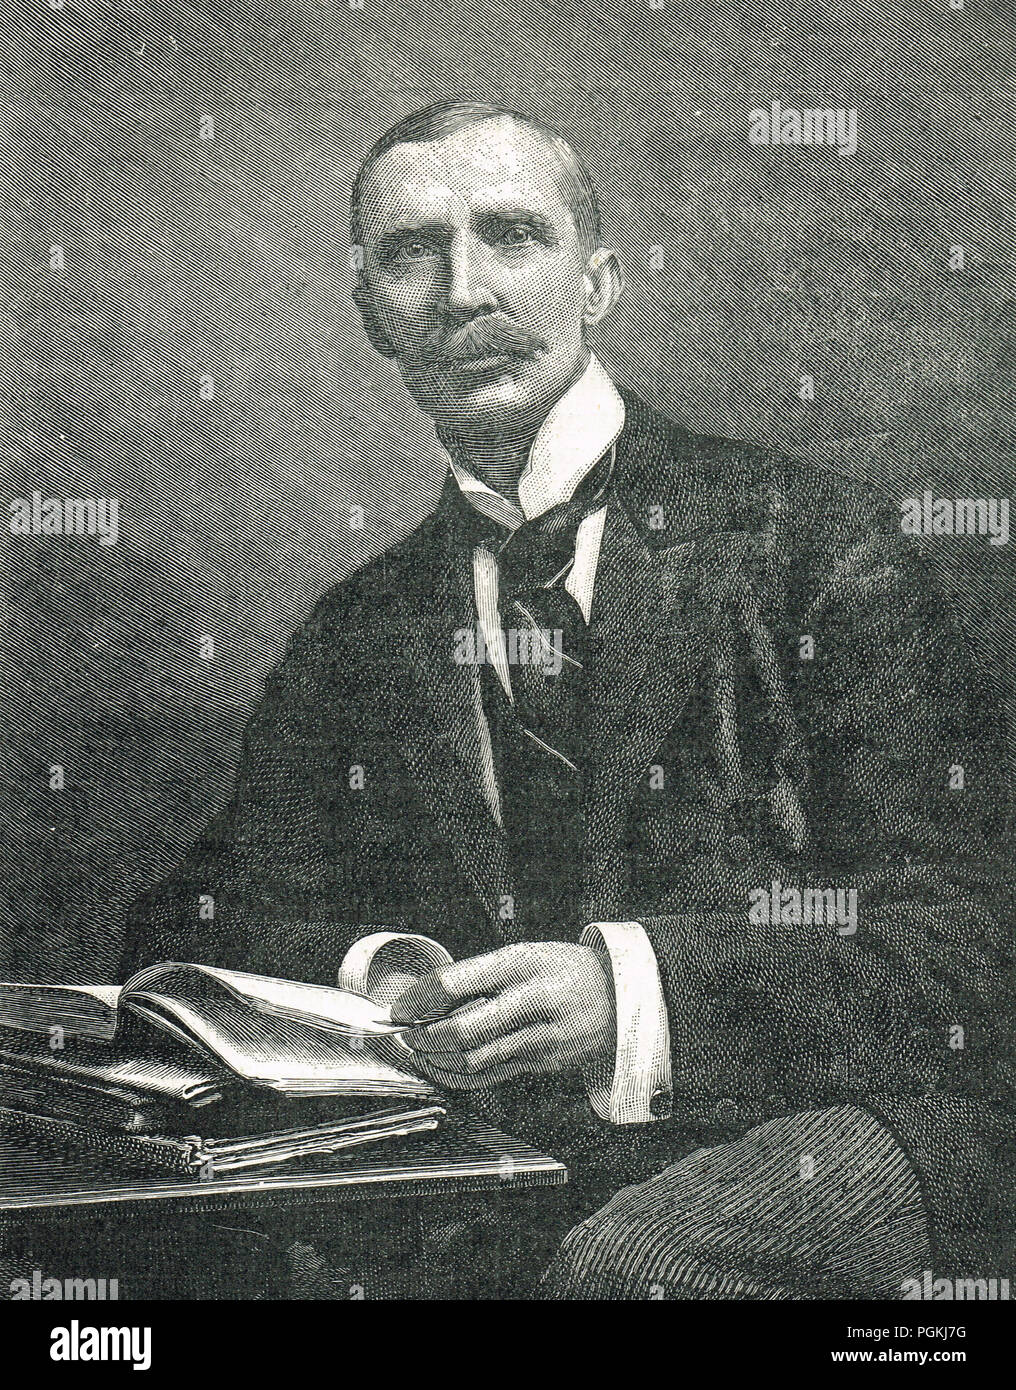 Sir George Dashwood Taubman Goldie, administrador de Manx, desempeñó un papel importante en la fundación de Nigeria Foto de stock